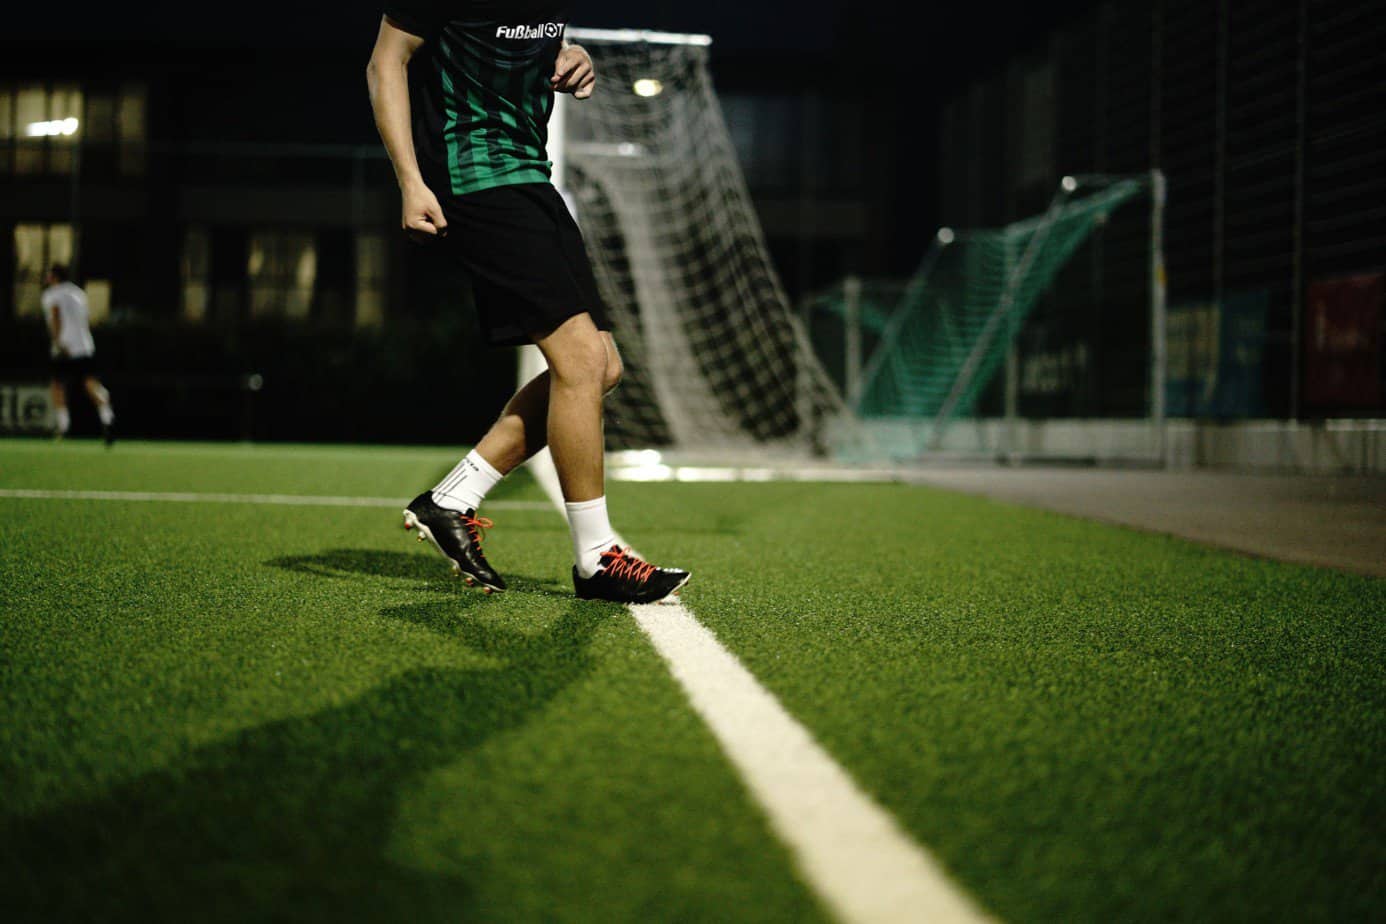 Vororientierung Fußball, Schulterblick trainieren, Soccerkinetics Fußballtraining